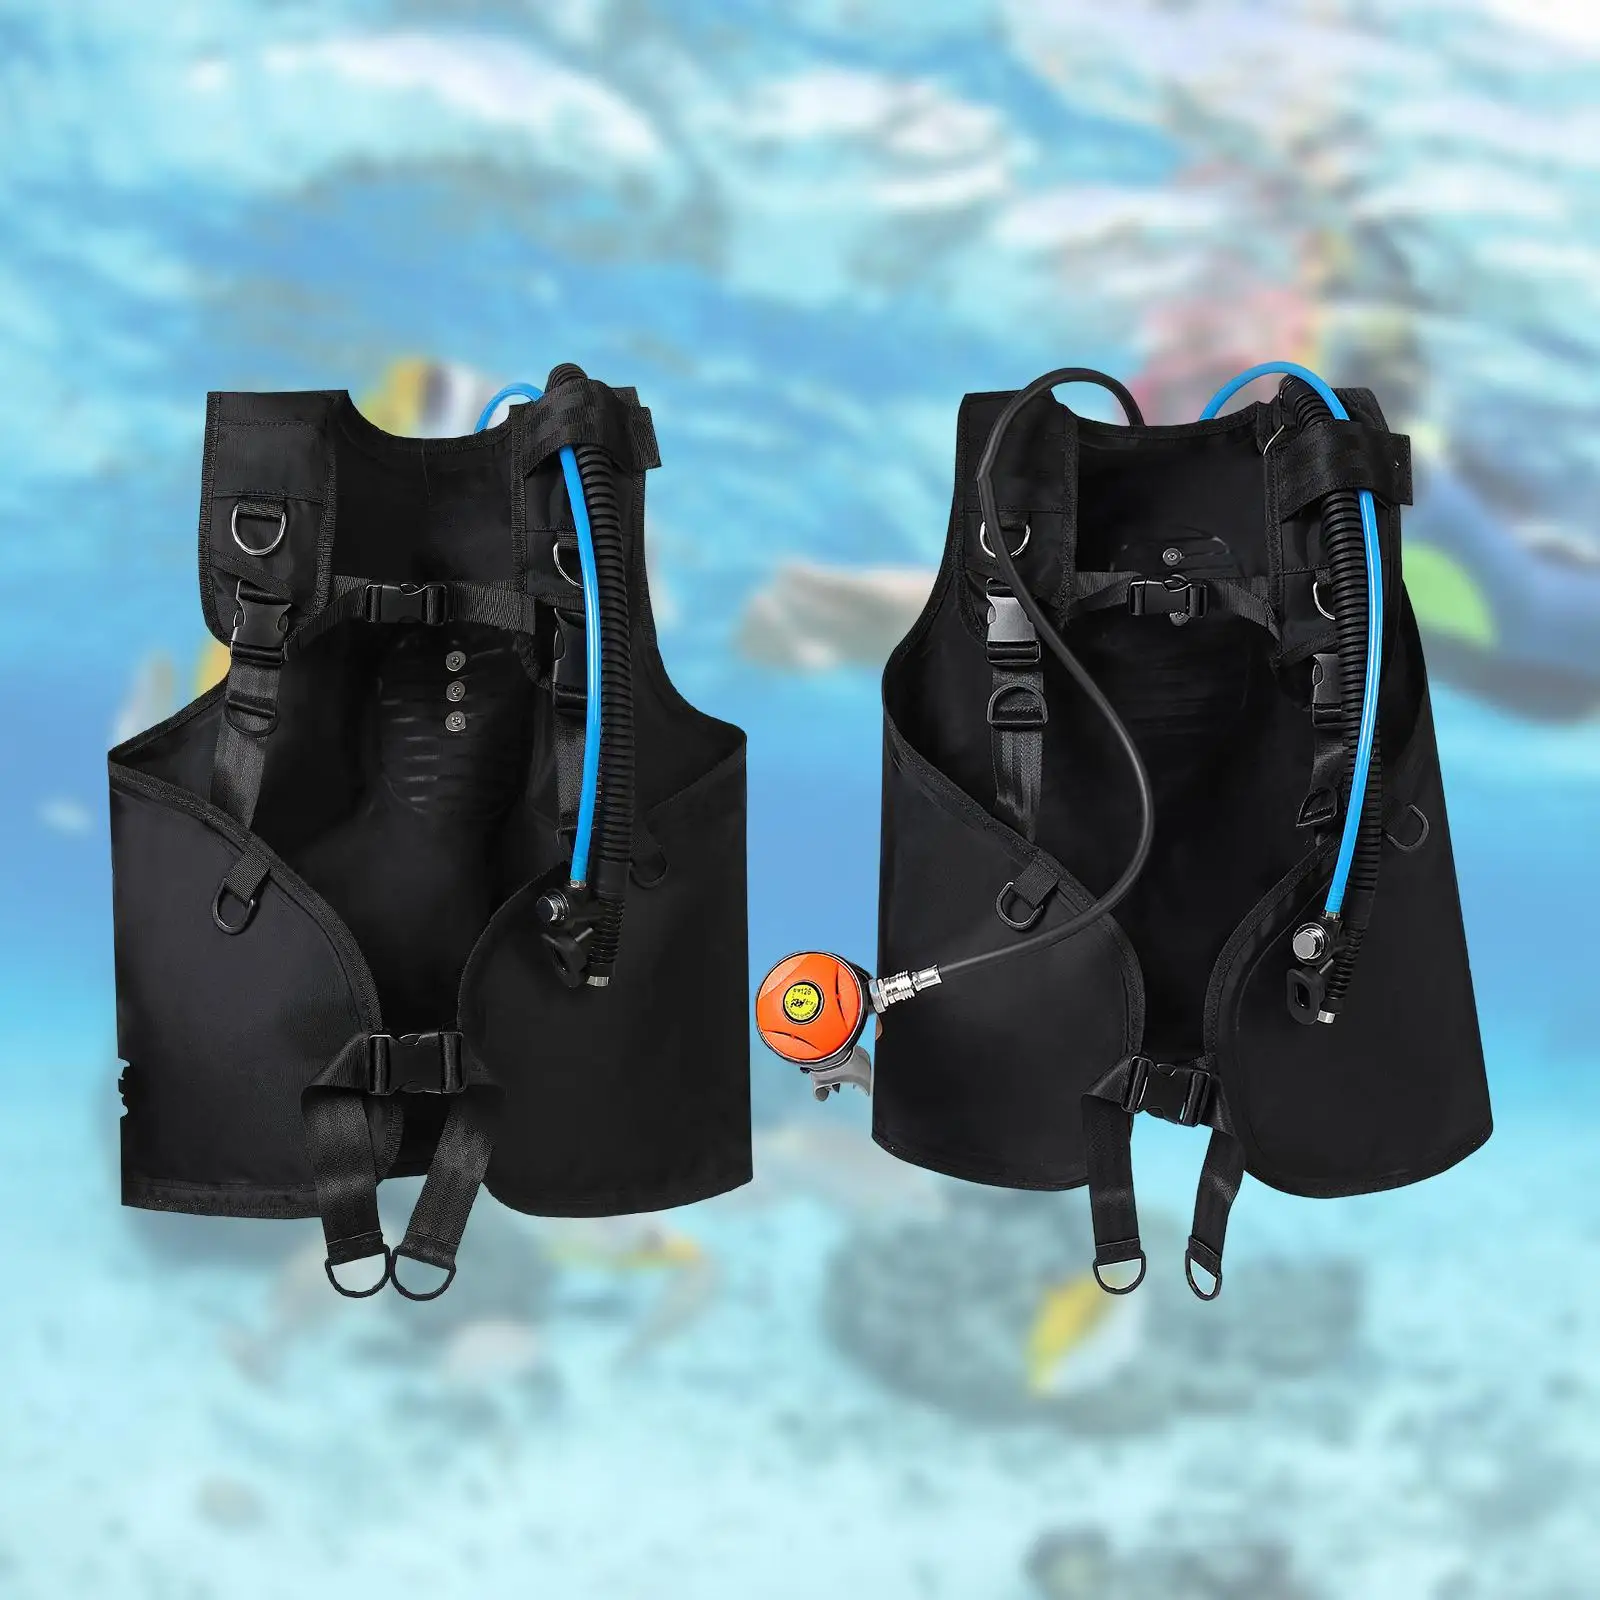 BCD Vest Scuba Diving Jacket Style Portable Durable Swim Surfing Snorkeling Scuba Diving BCD Equipment Scuba Diving Vest